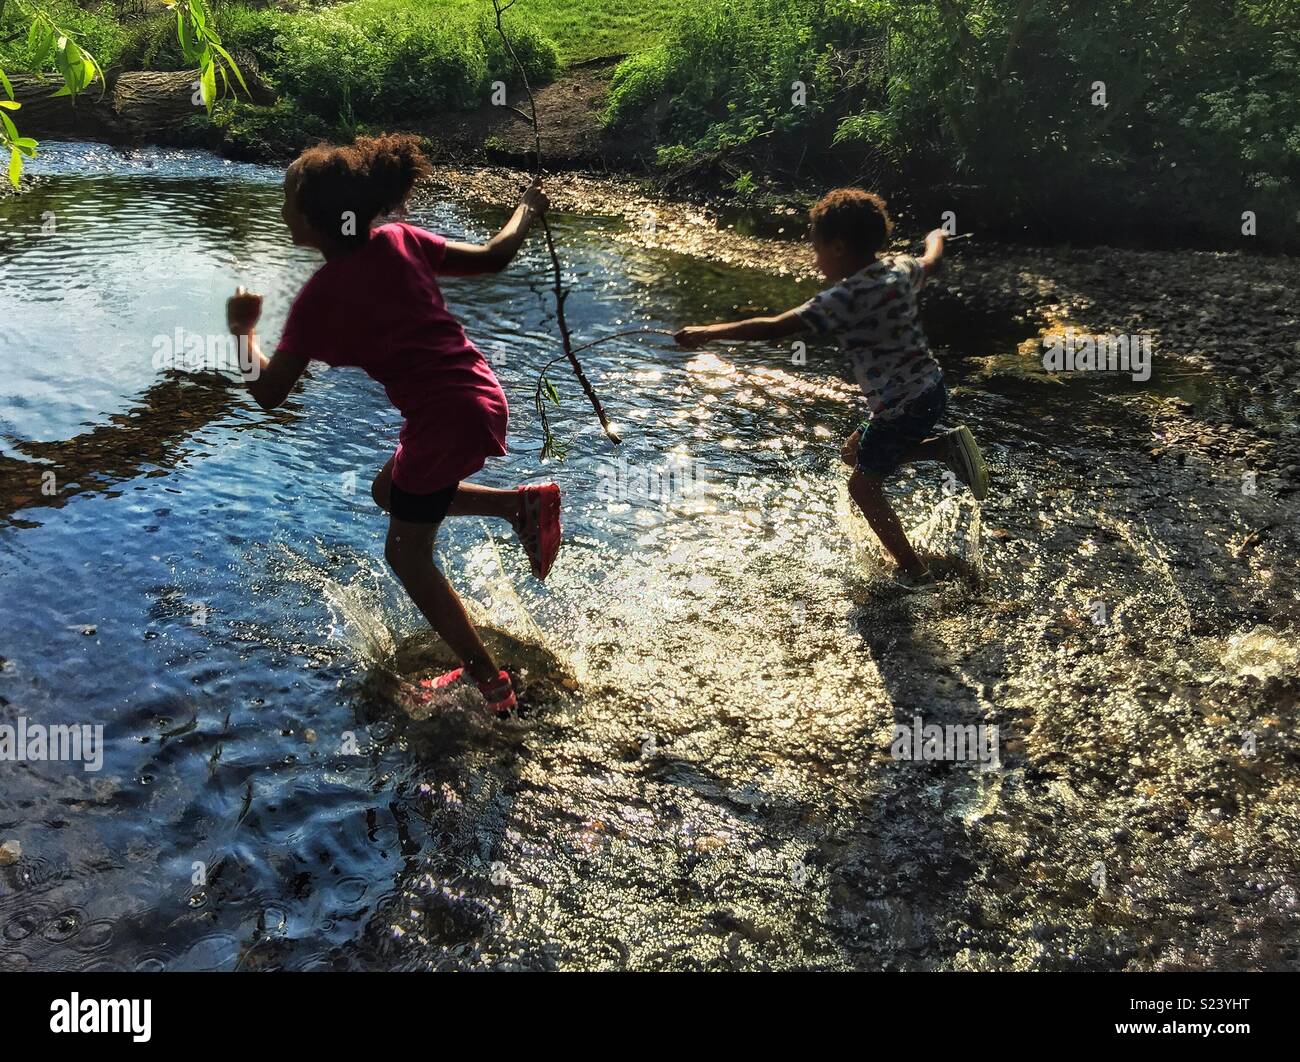 Children running in a stream Stock Photo